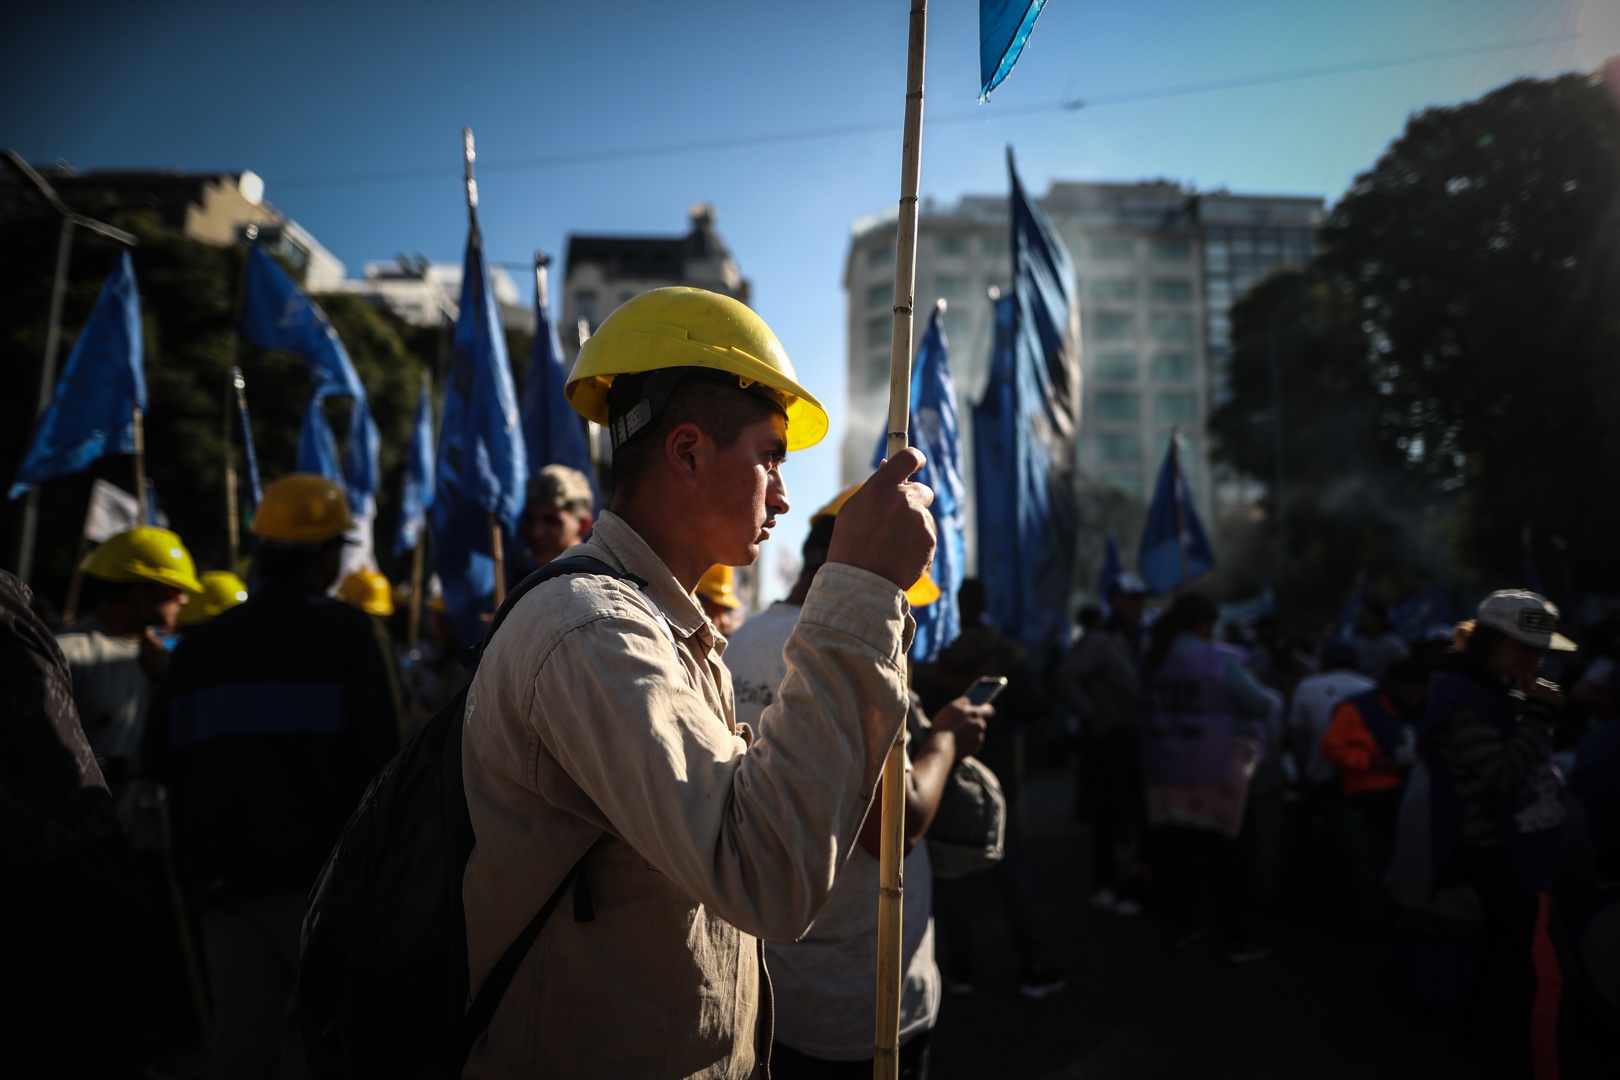 precariedad del sistema de pensiones en latinoamérica obliga a trabajar más allá de los 65